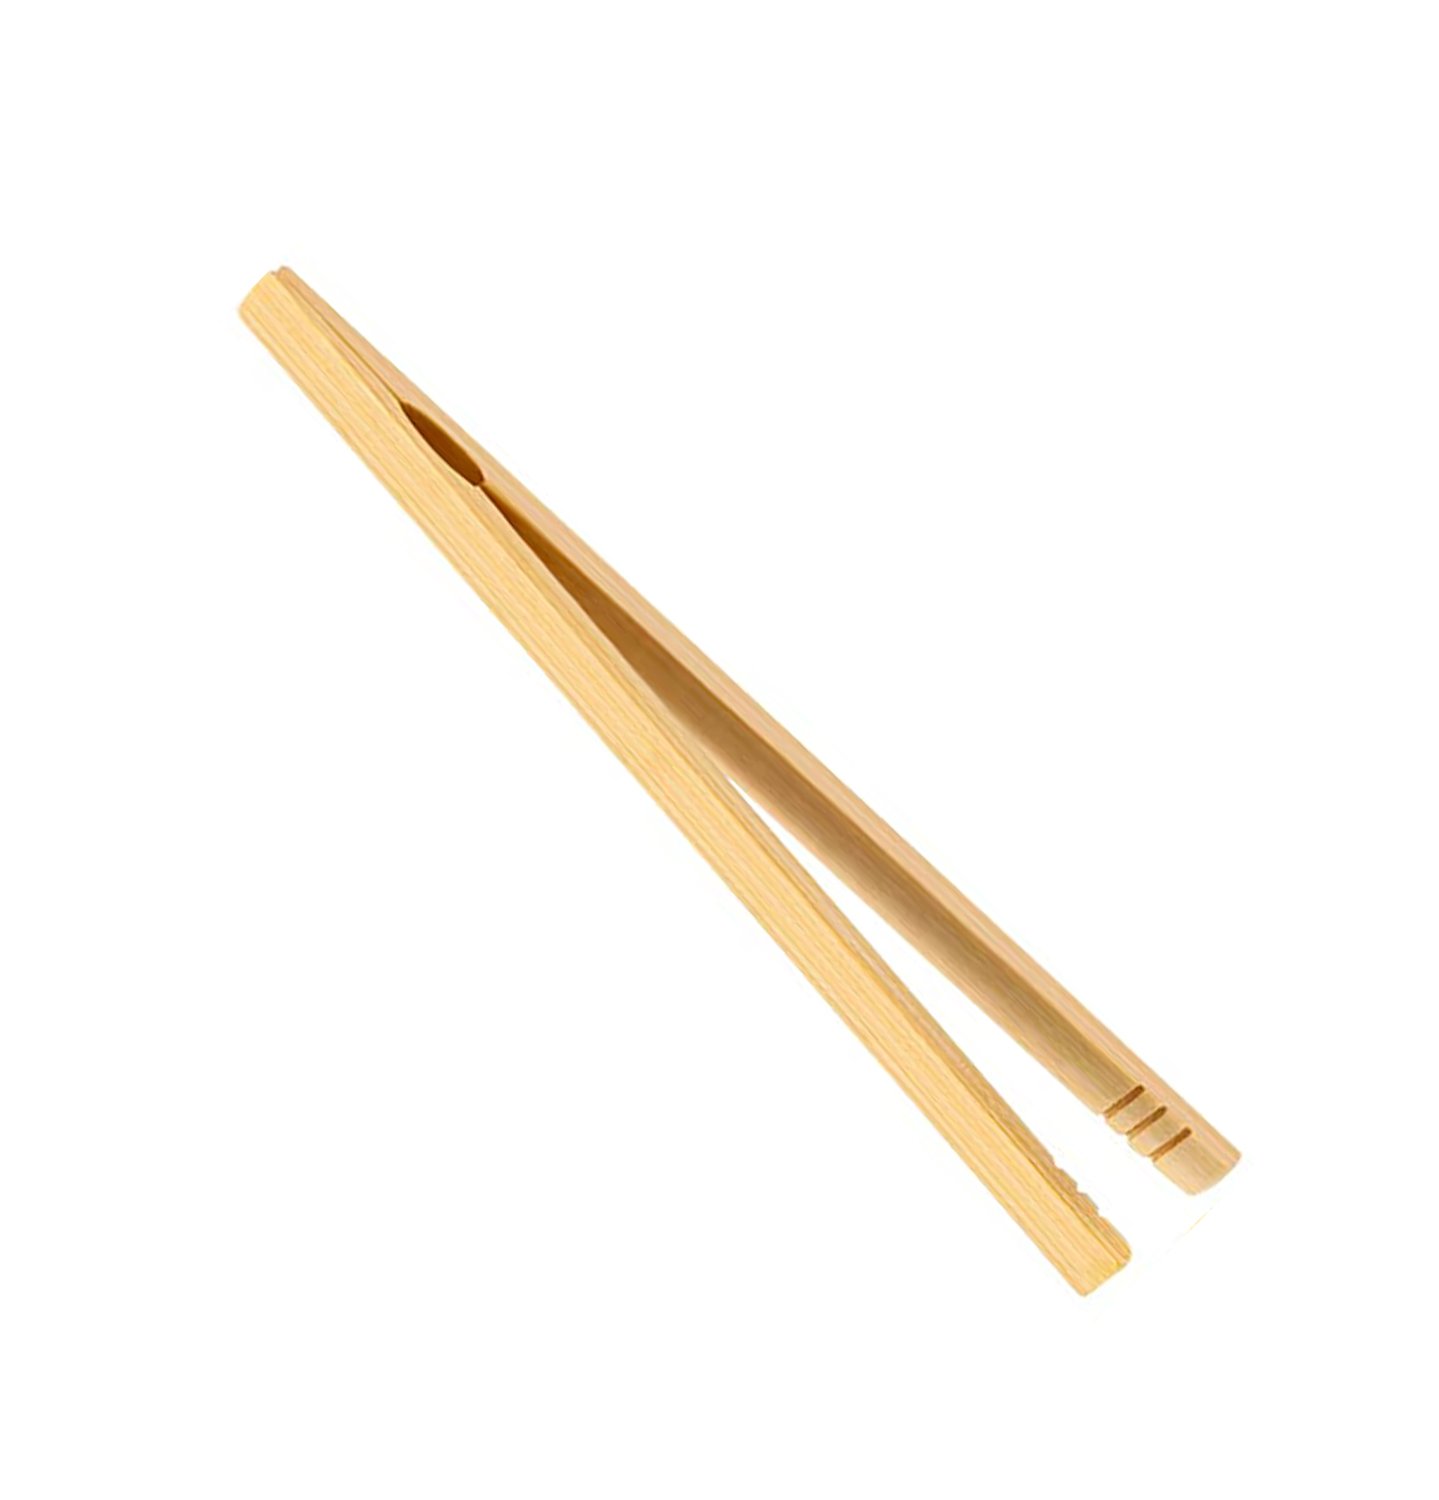 Materiale euristico pinza in bambù